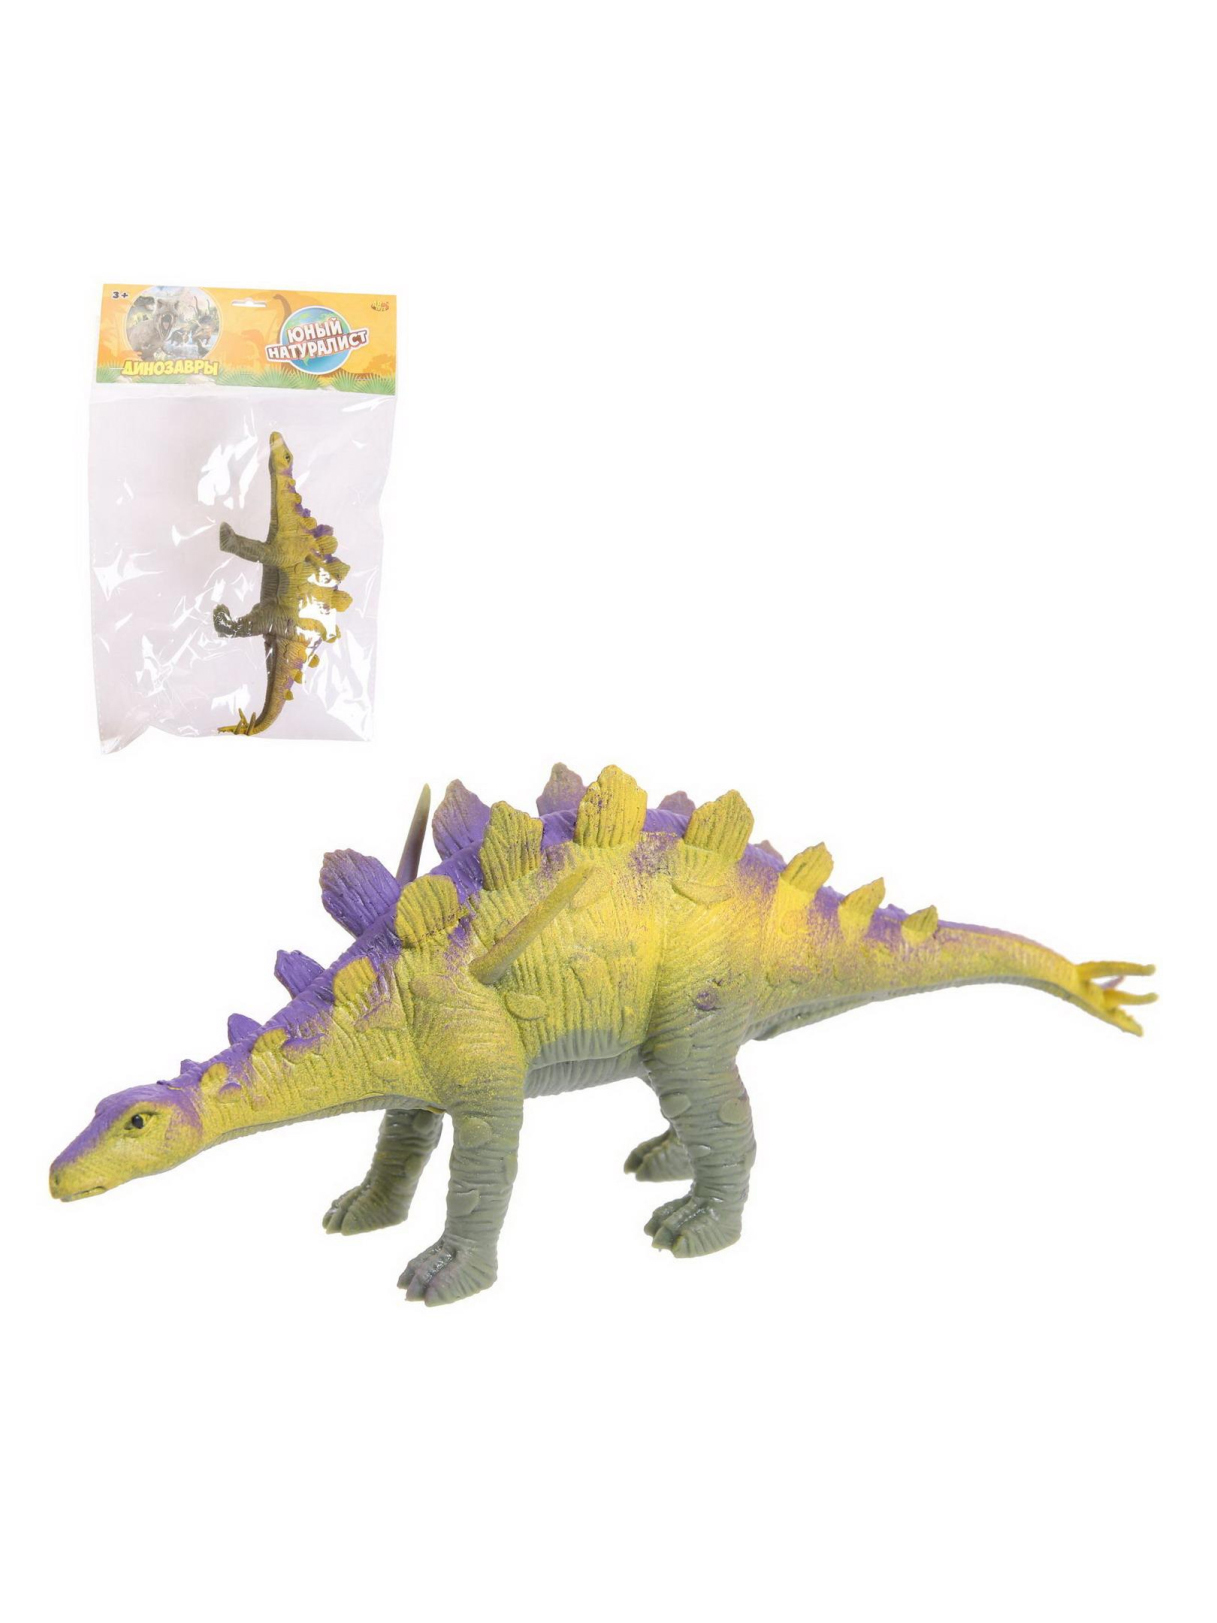 Фигурка Abtoys Юный натуралист: Динозавры Стегозавр резиновая PT-01700